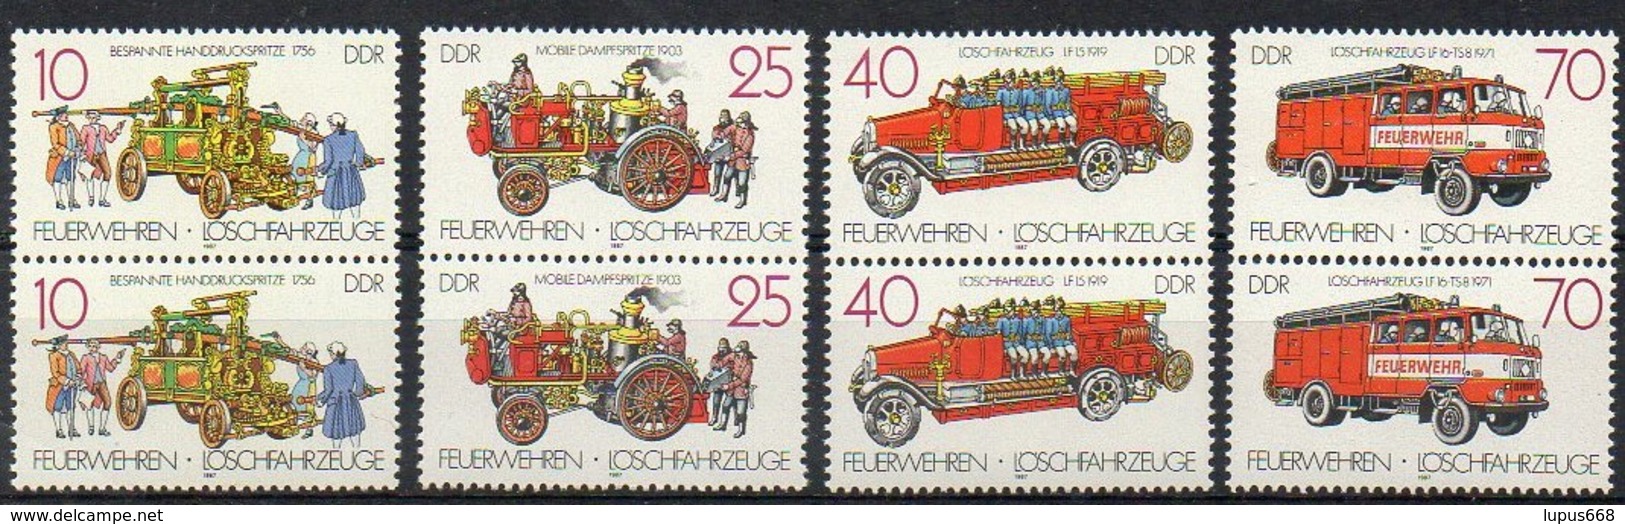 DDR  1987  MiNr. 3101/ 3104  **/ Mnh  Paare;  Feuerwehr - Feuerwehr